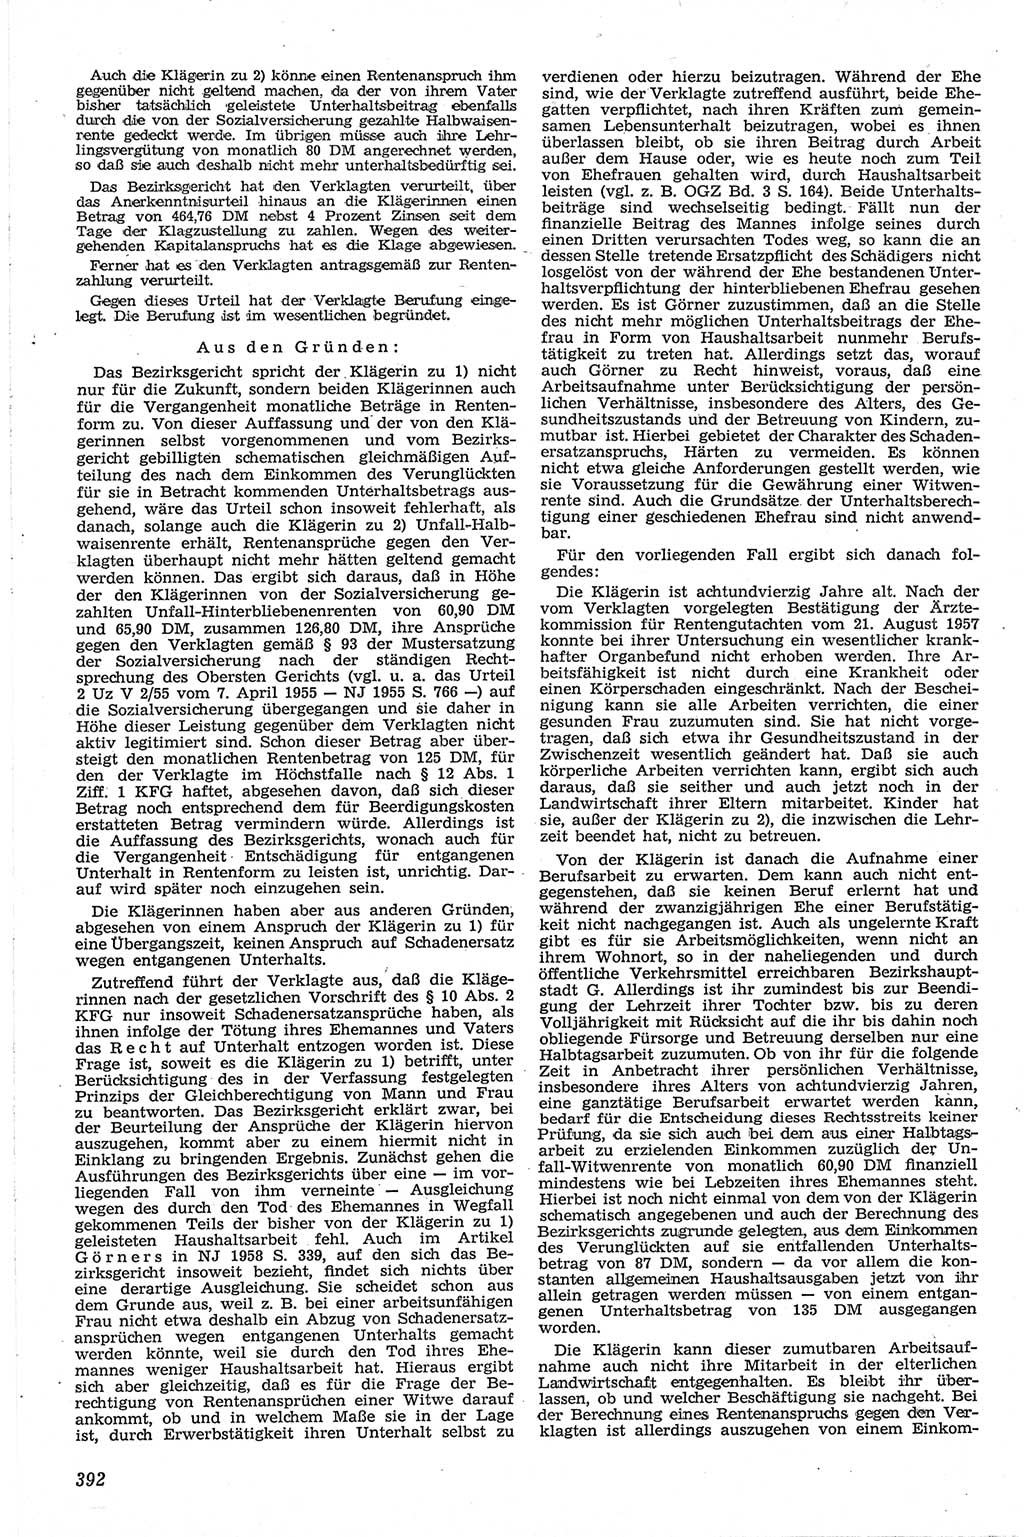 Neue Justiz (NJ), Zeitschrift für Recht und Rechtswissenschaft [Deutsche Demokratische Republik (DDR)], 13. Jahrgang 1959, Seite 392 (NJ DDR 1959, S. 392)